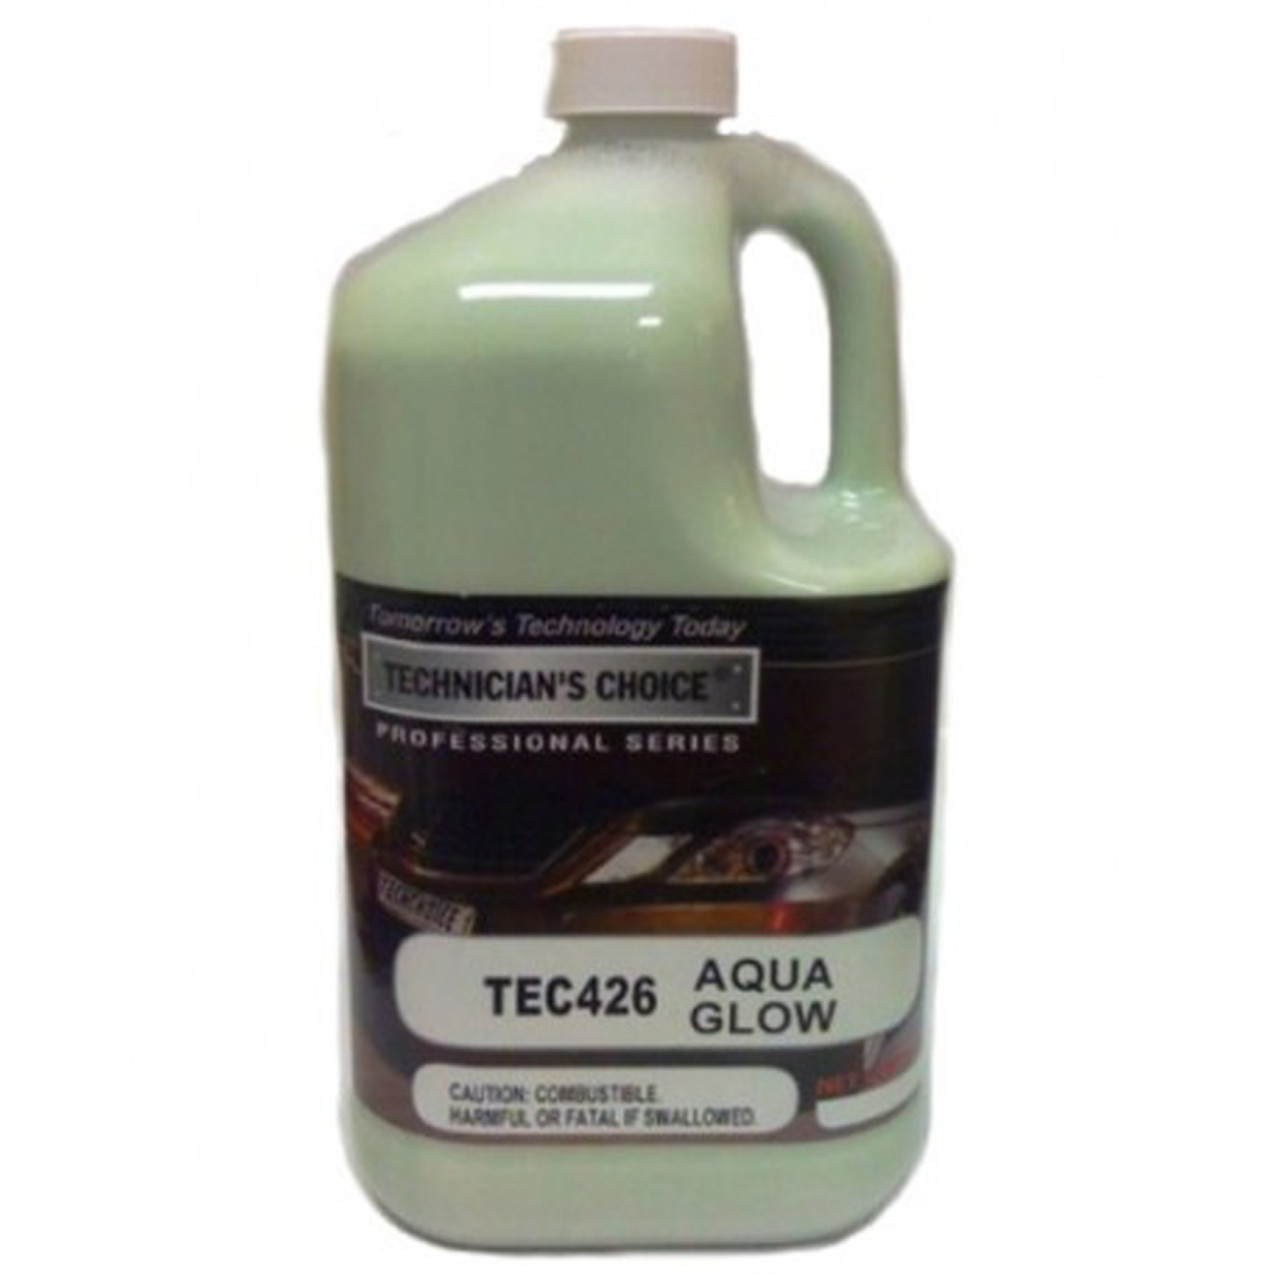 TEC426 Aqua Glow